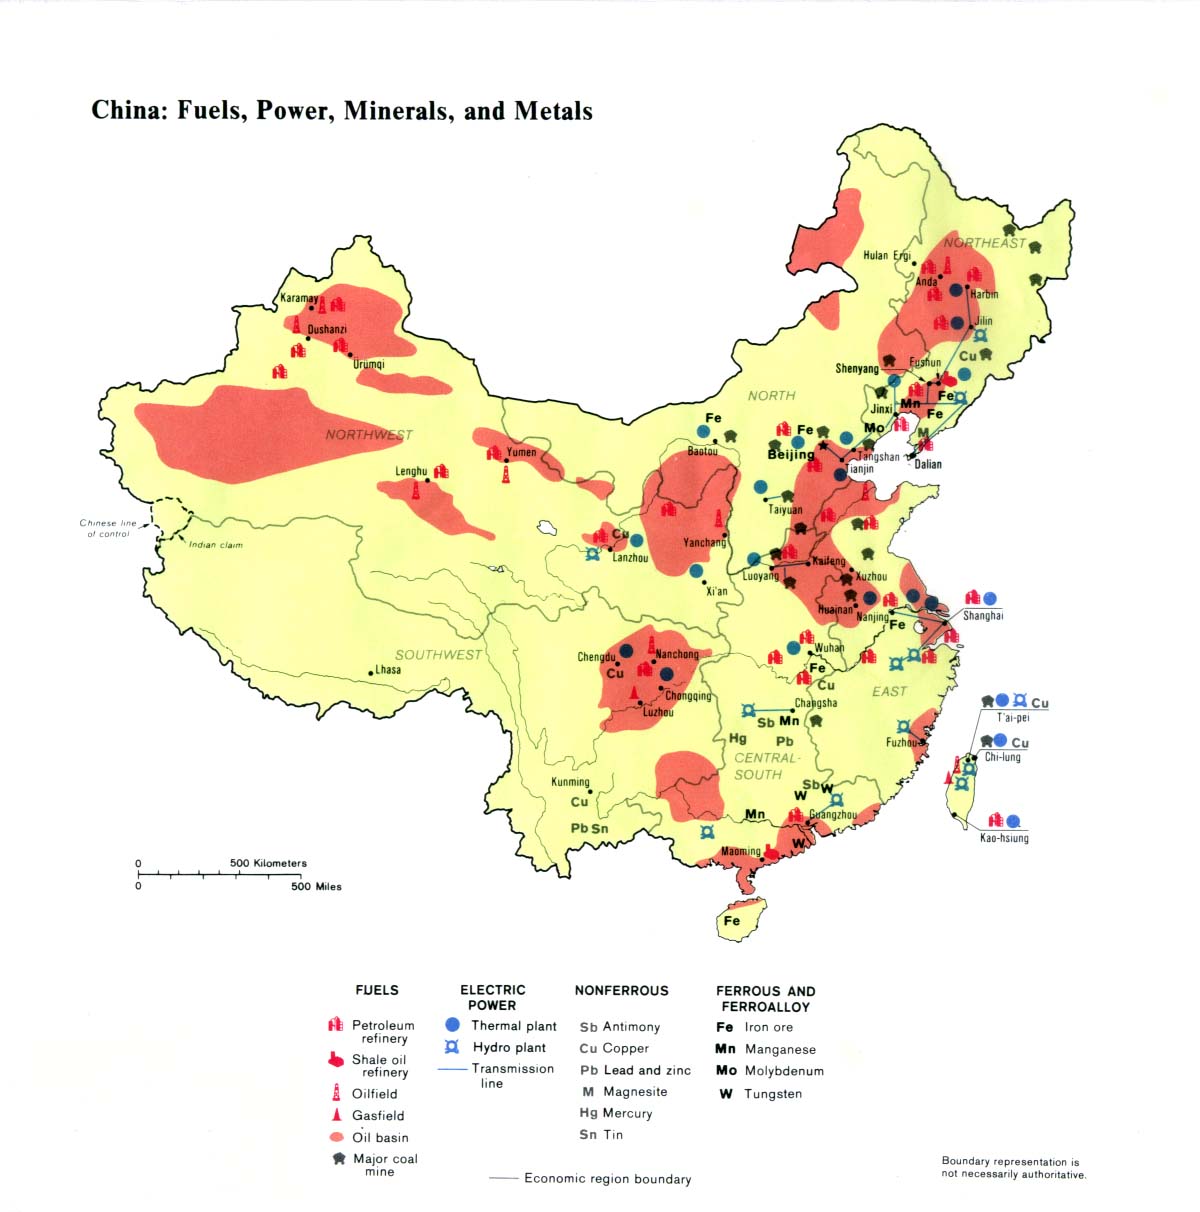 Combustibles, Energía Eléctrica, Minerales y Metales de China 1983